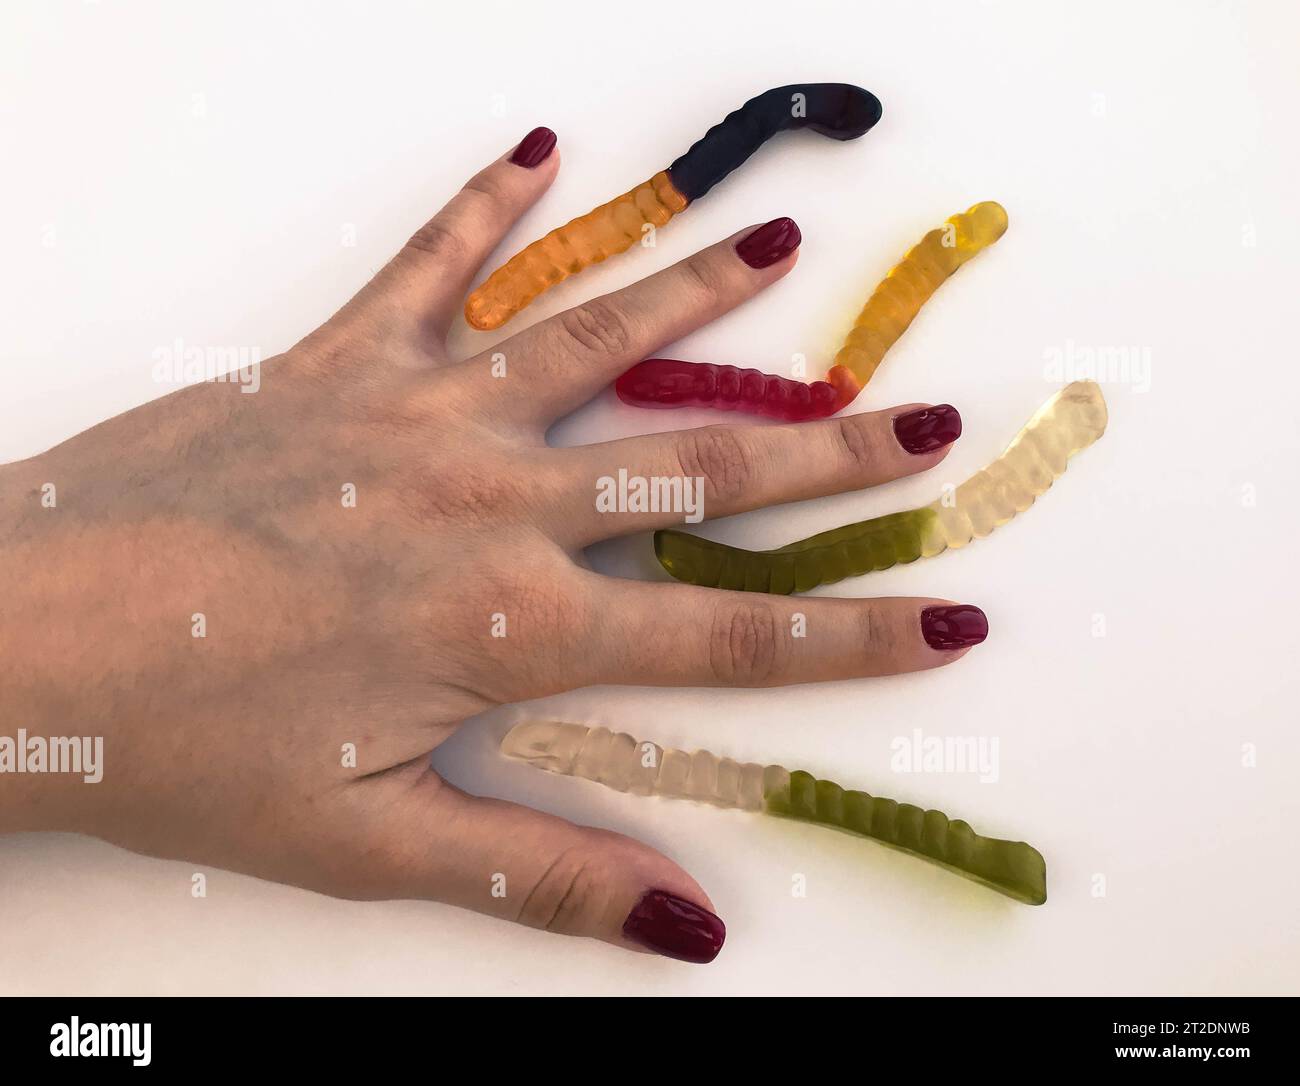 Lange, mundtränende, mehrfarbige Würmer auf der Hand eines Mädchens mit einer hellroten Maniküre. Die Würmer liegen zwischen den Fingern. Ungewöhnliche kreative Shooti Stockfoto